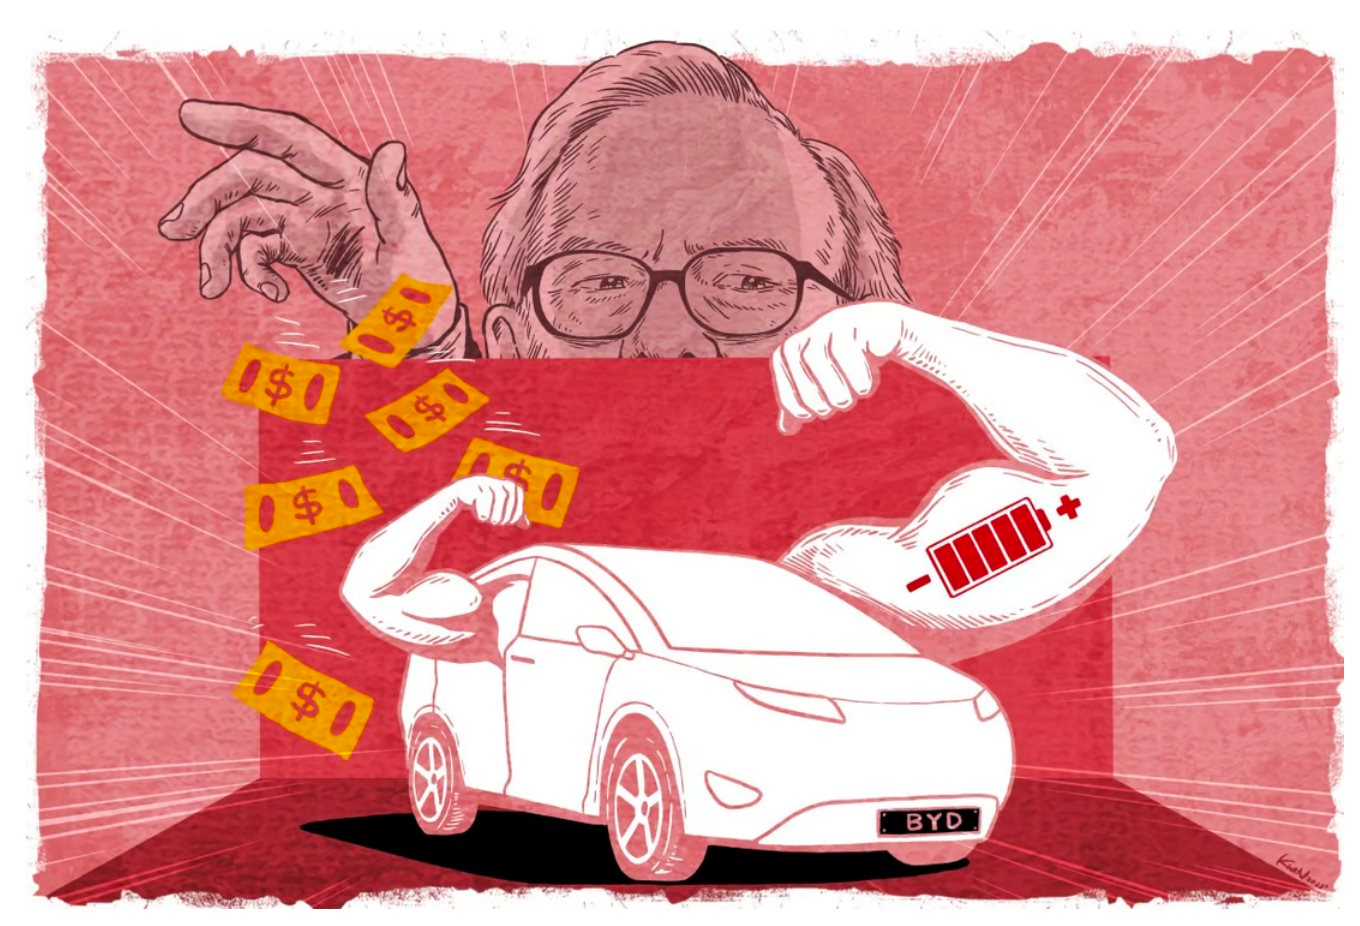 Chuyện về hãng ô tô Made in China: Từ 'kẻ vô danh' bị Elon Musk chê cười đến khoản đầu tư lãi gấp gần 40 lần của Warren Buffett - Ảnh 1.